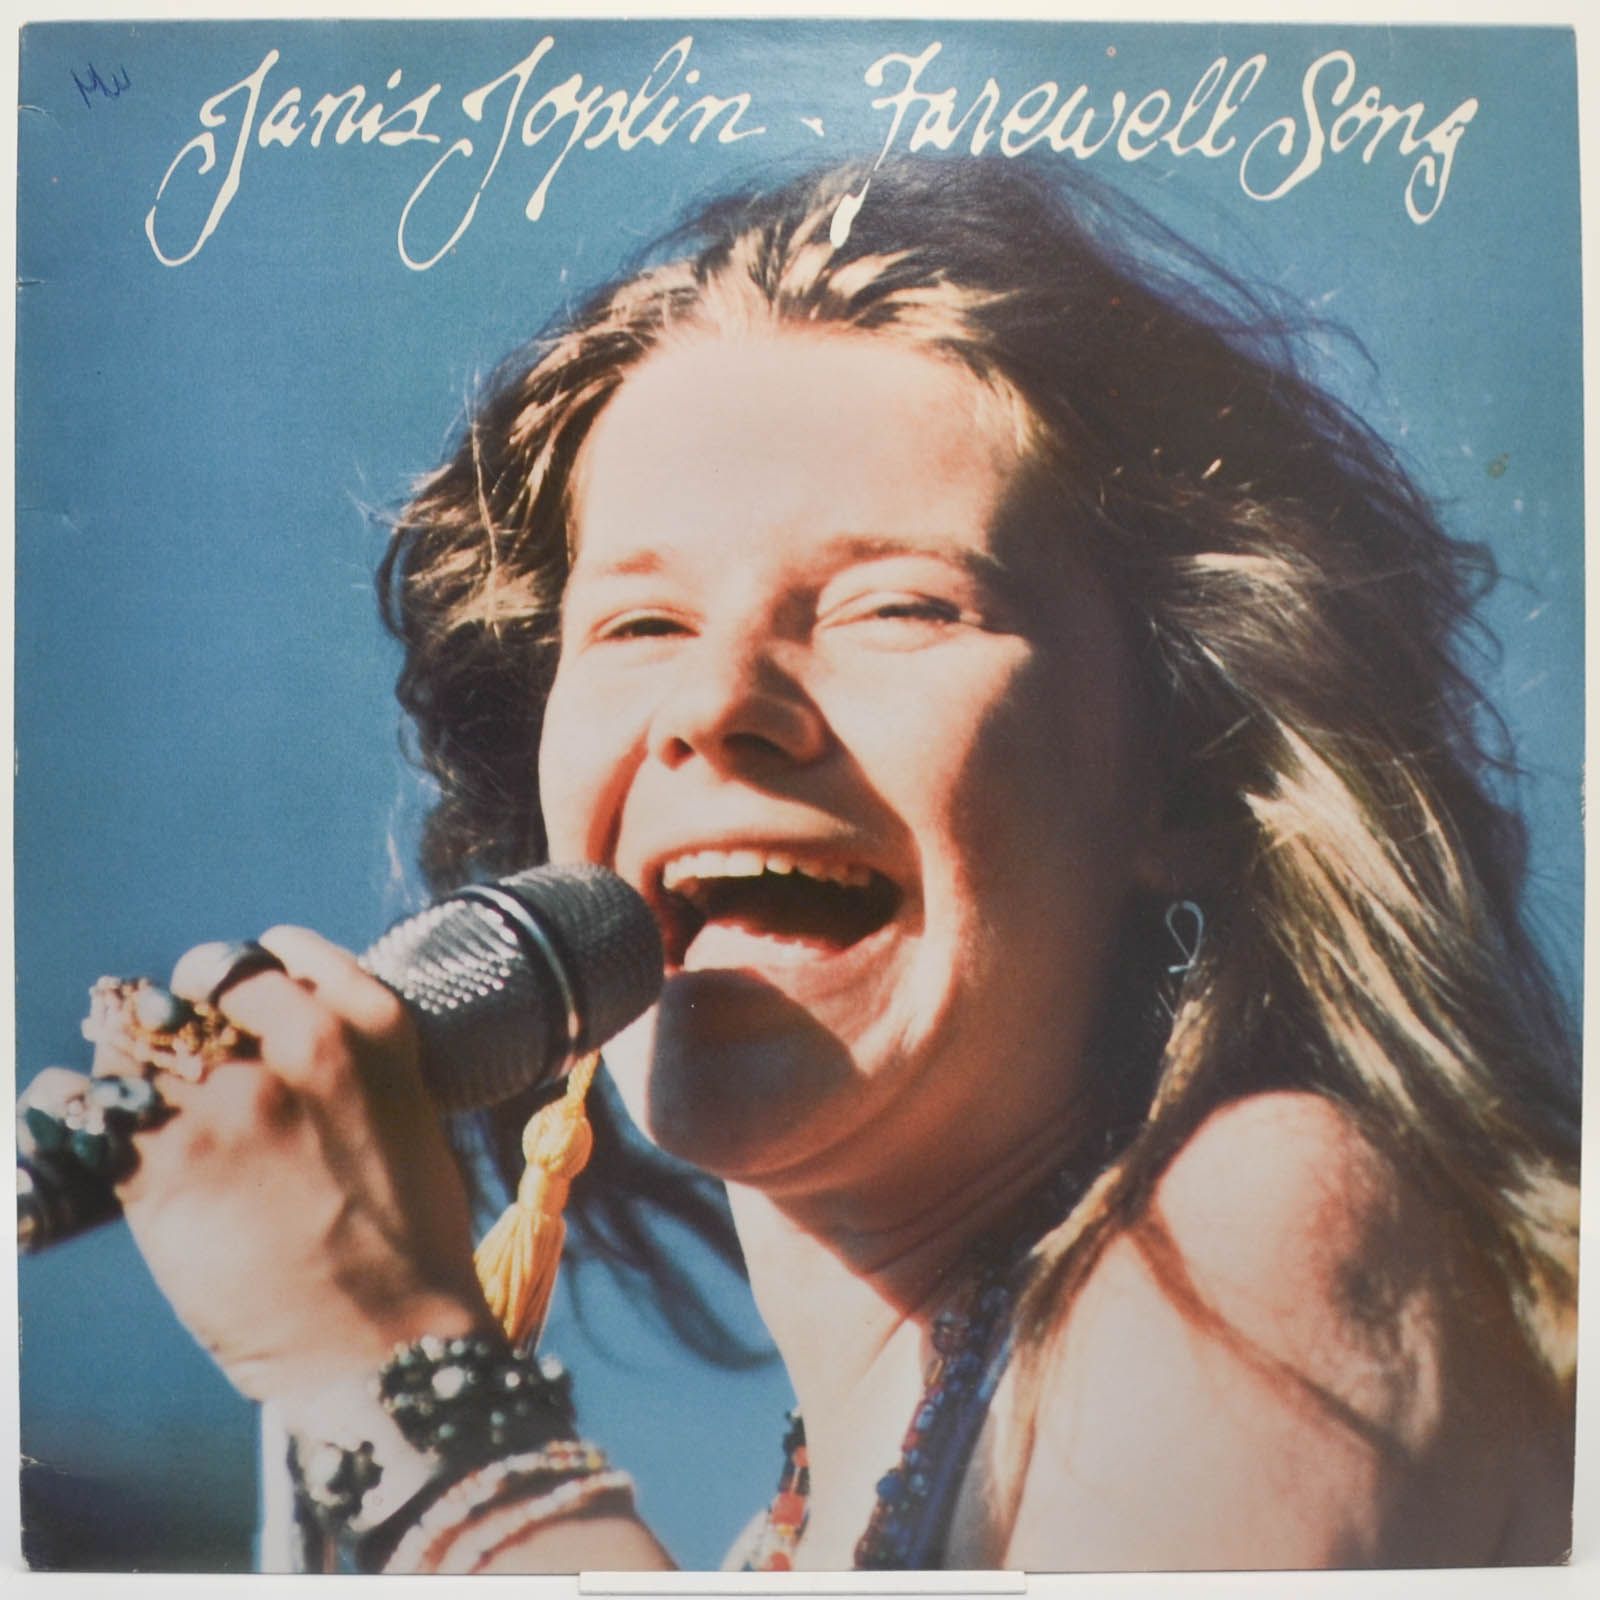 Janis Joplin — Farewell Song, 1982